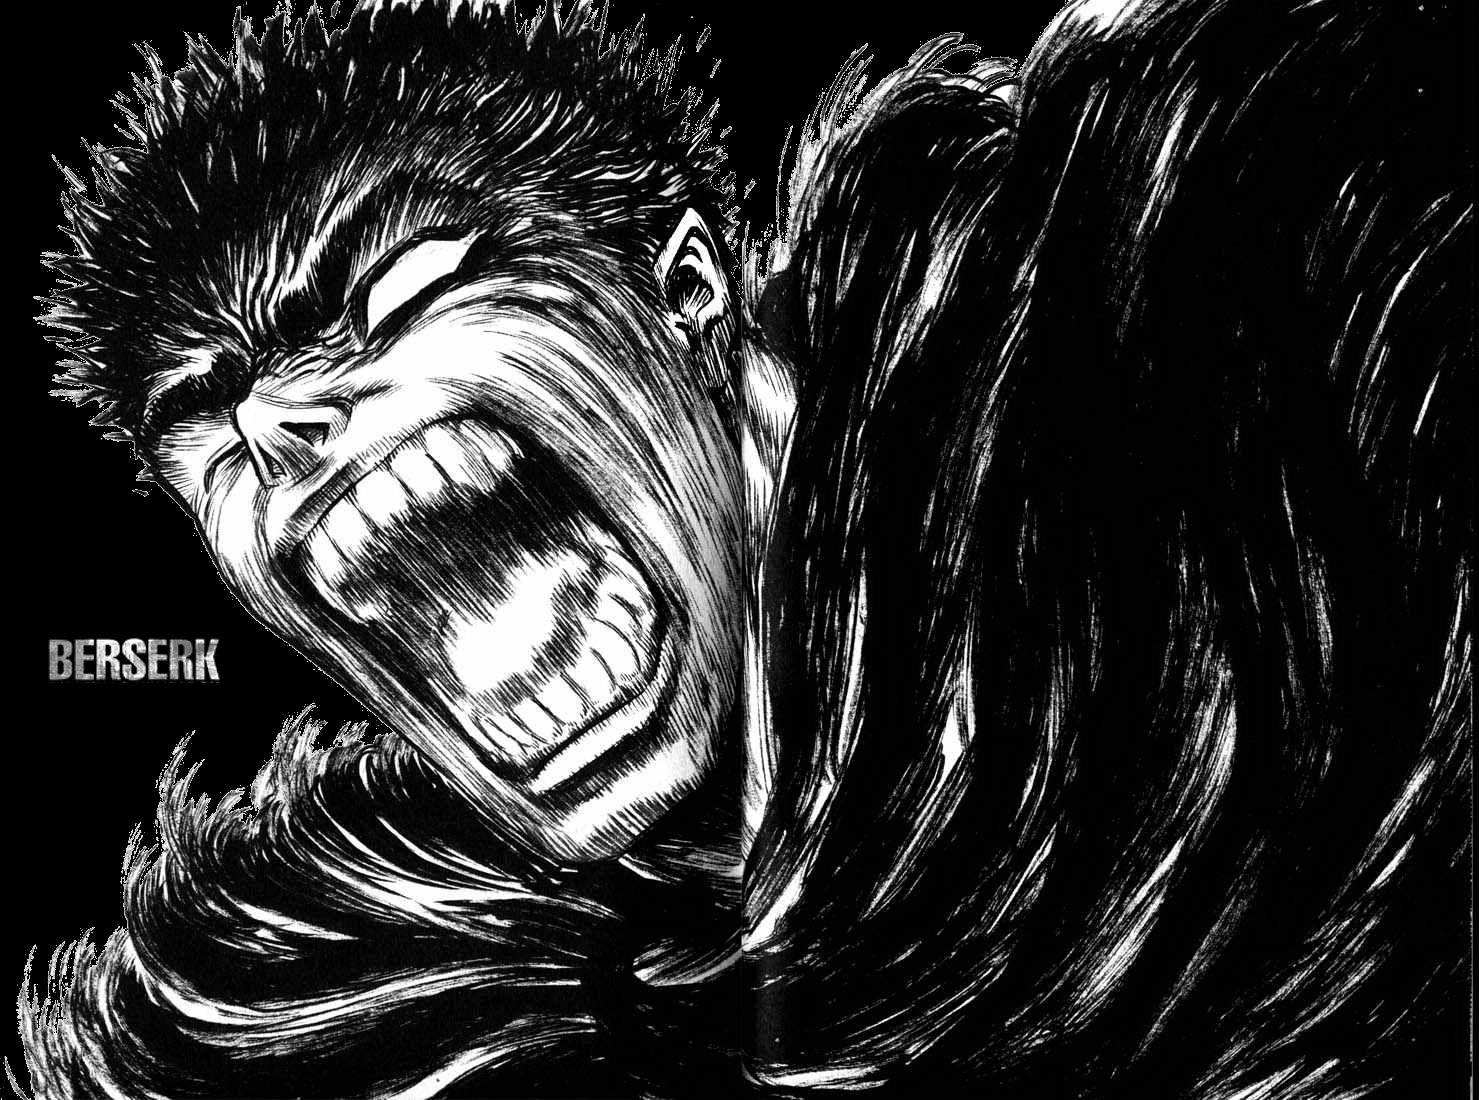 1479x1100 Tải xuống miễn phí hình nền Manga Berserk Guts ForWallpapercom [1479x1100] cho Máy tính để bàn, Di động & Máy tính bảng của bạn.  Khám phá Hình nền Manga Berserk.  Hình nền manga Berserk, Hình nền Berserk, Hình nền manga